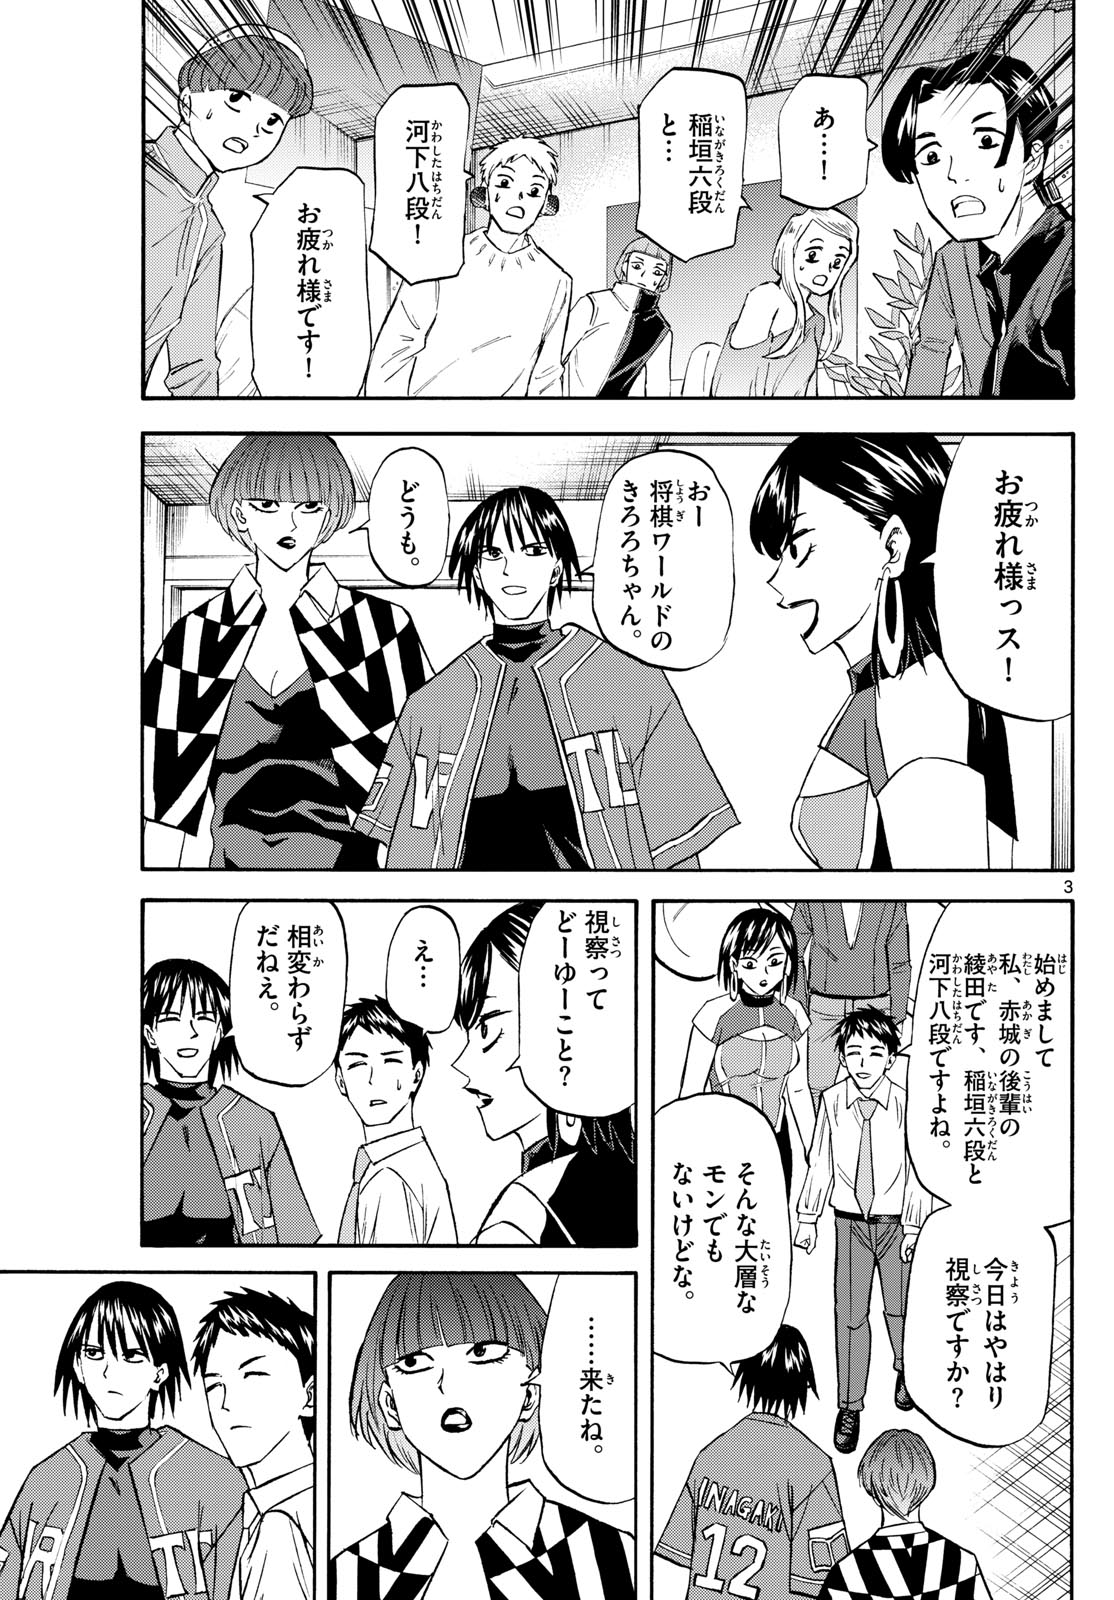 Tatsu to Ichigo - Chapter 196 - Page 3